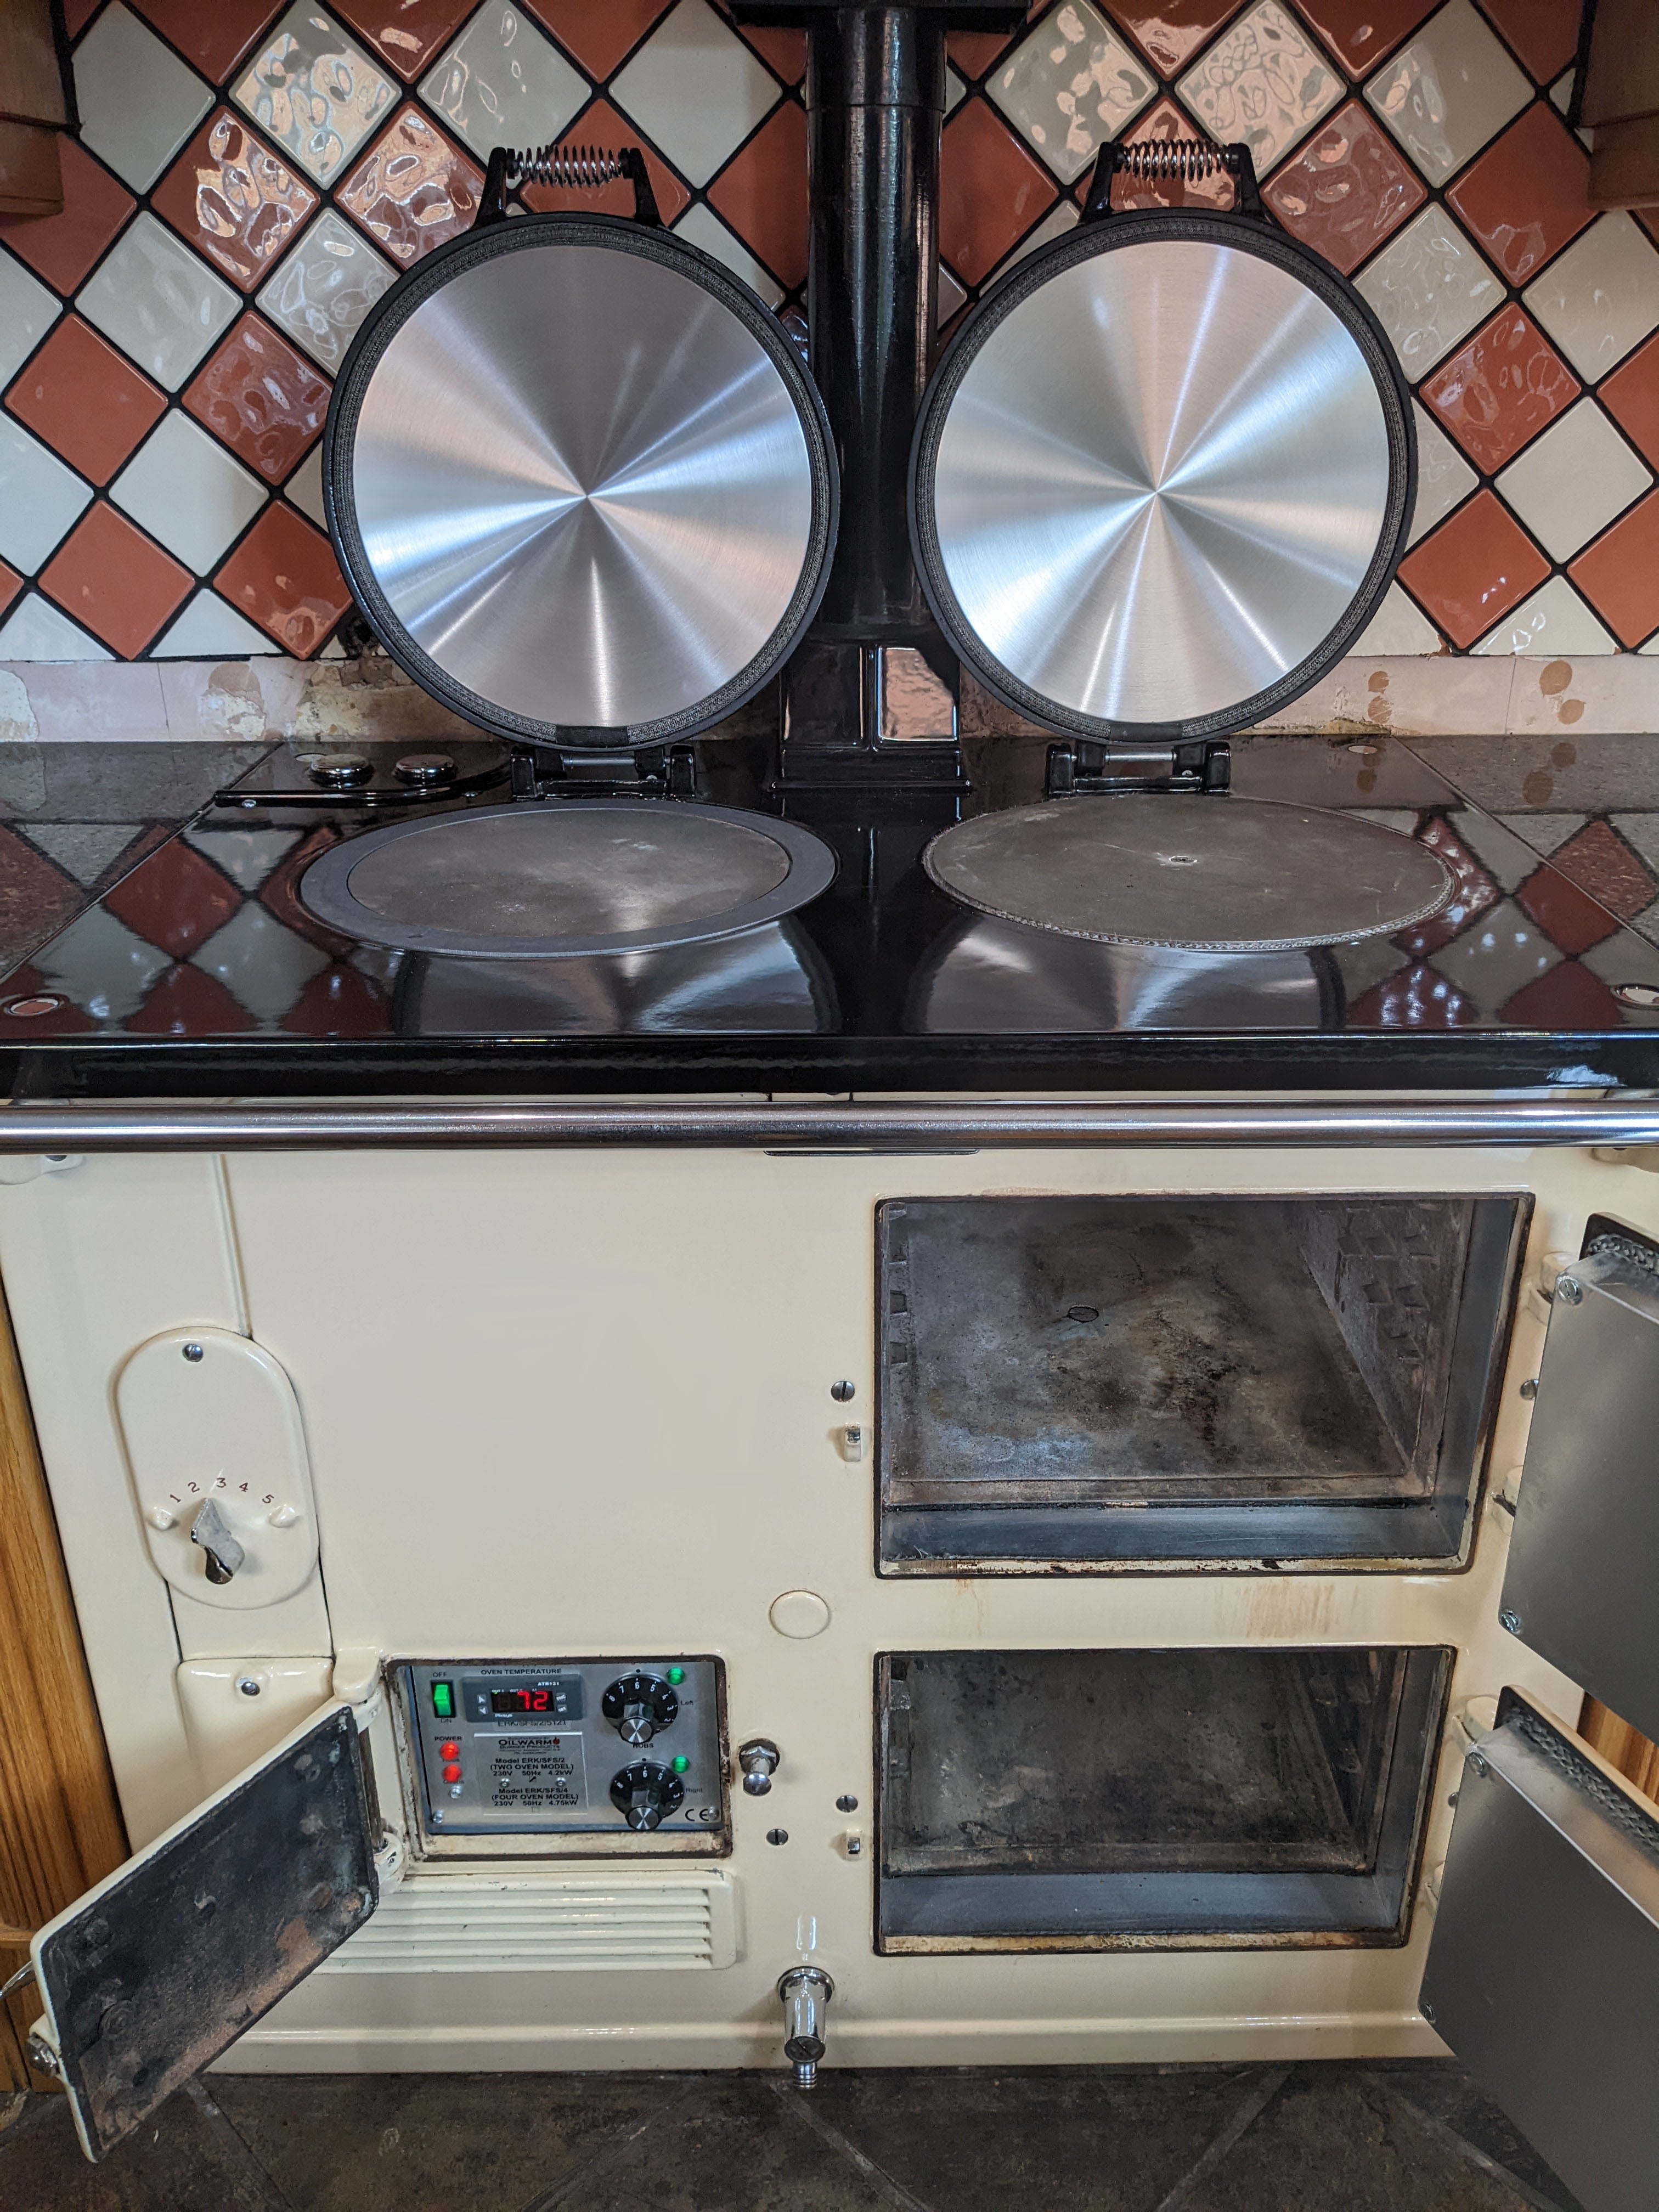 2 oven standard Aga range cooker